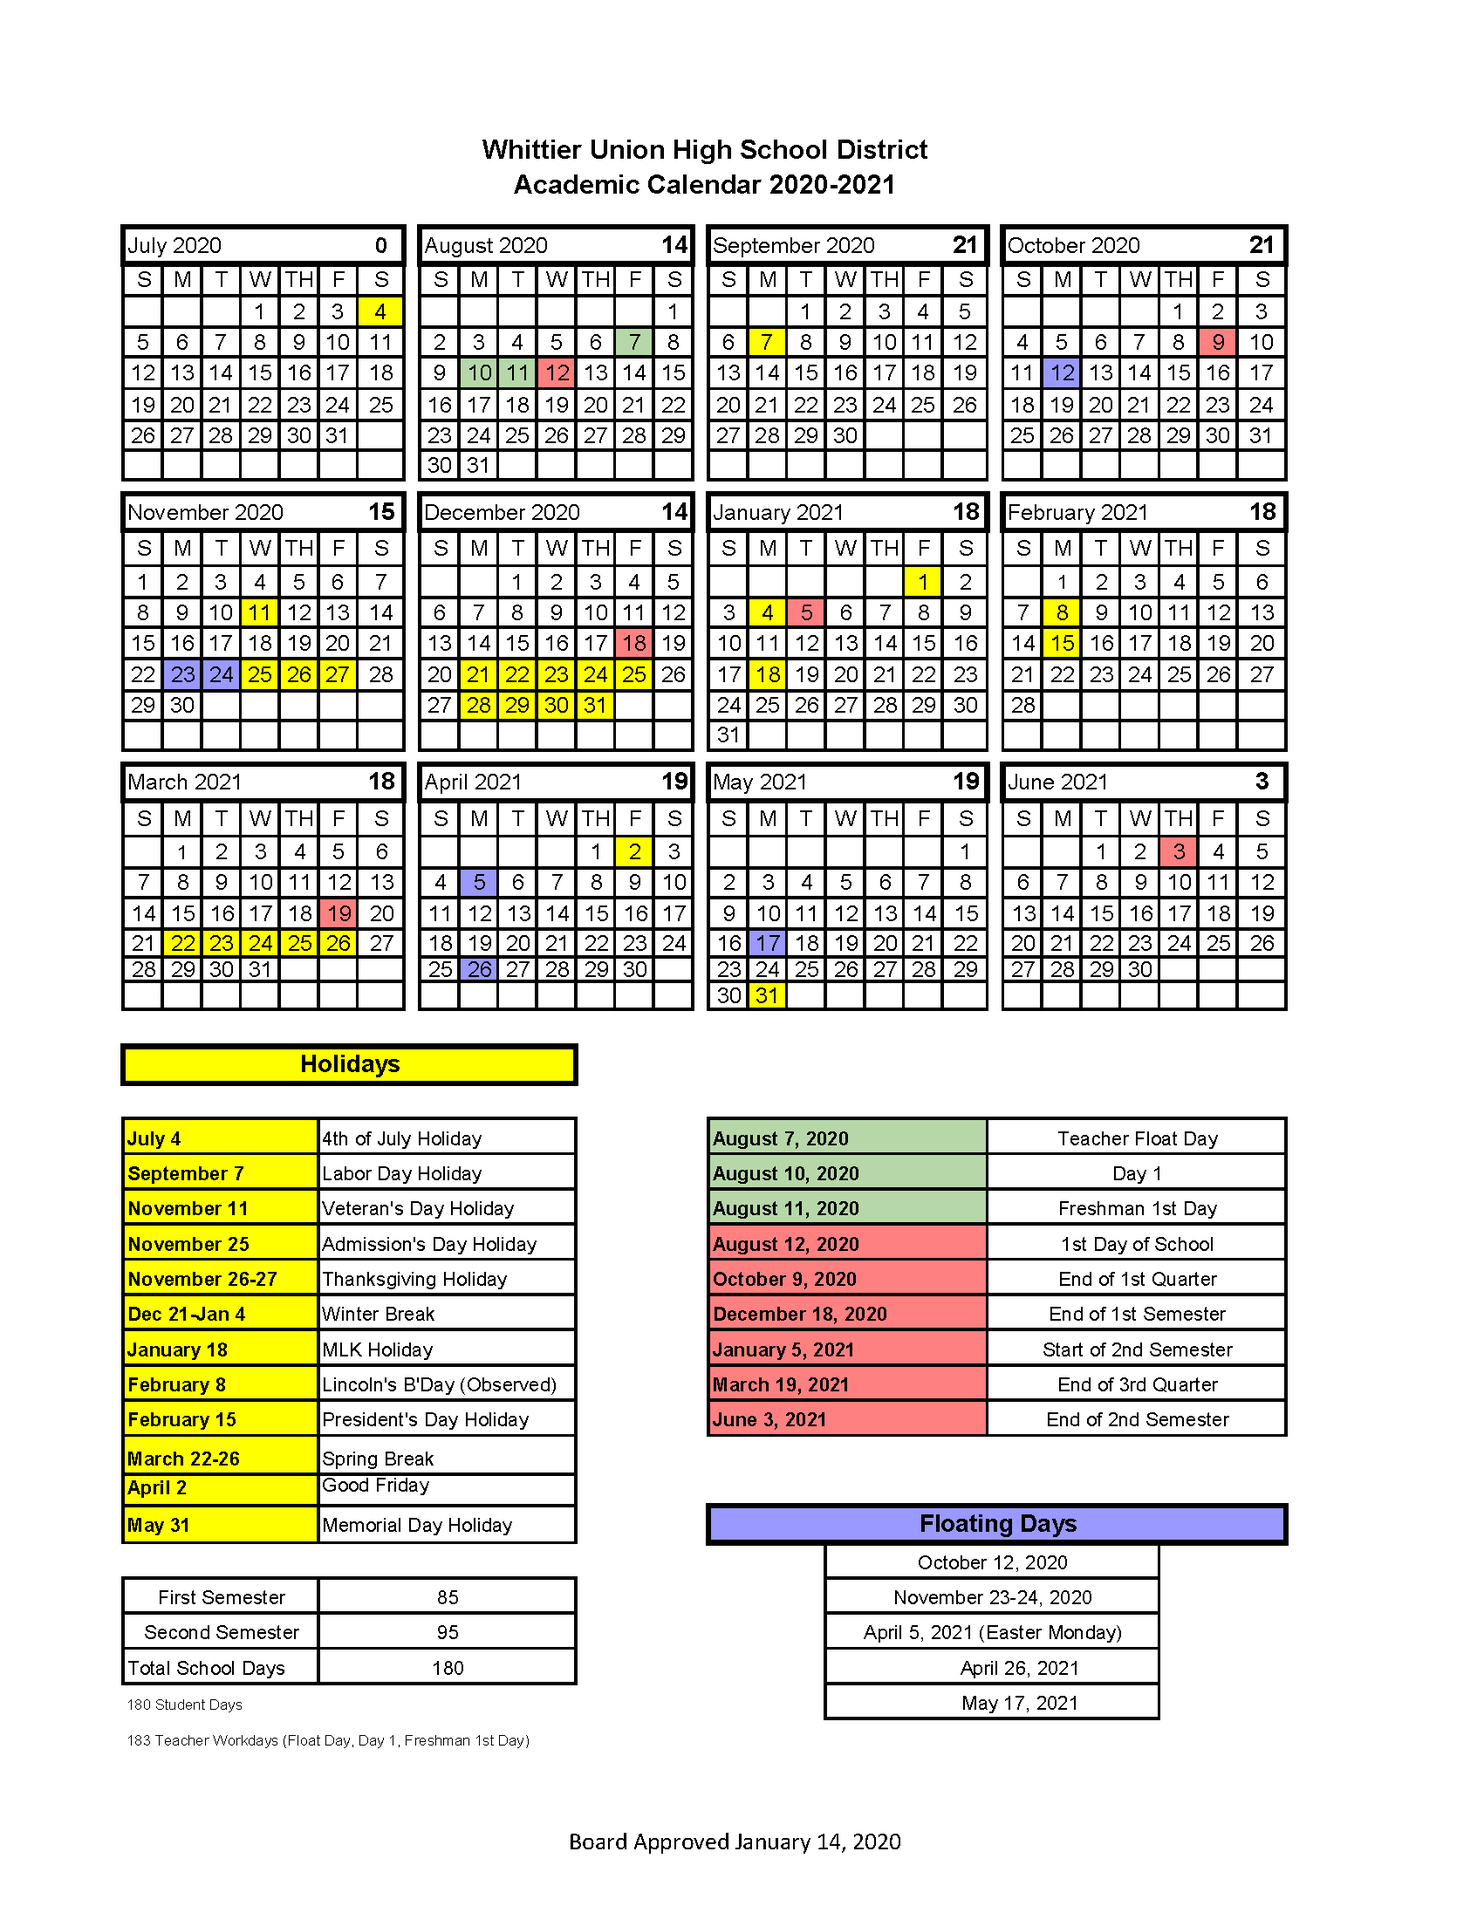 Santa Fe Public Schools Calendar 2021 2022 | Calendar Page-Nyc School Calendar 2021 To 2022 Pdf